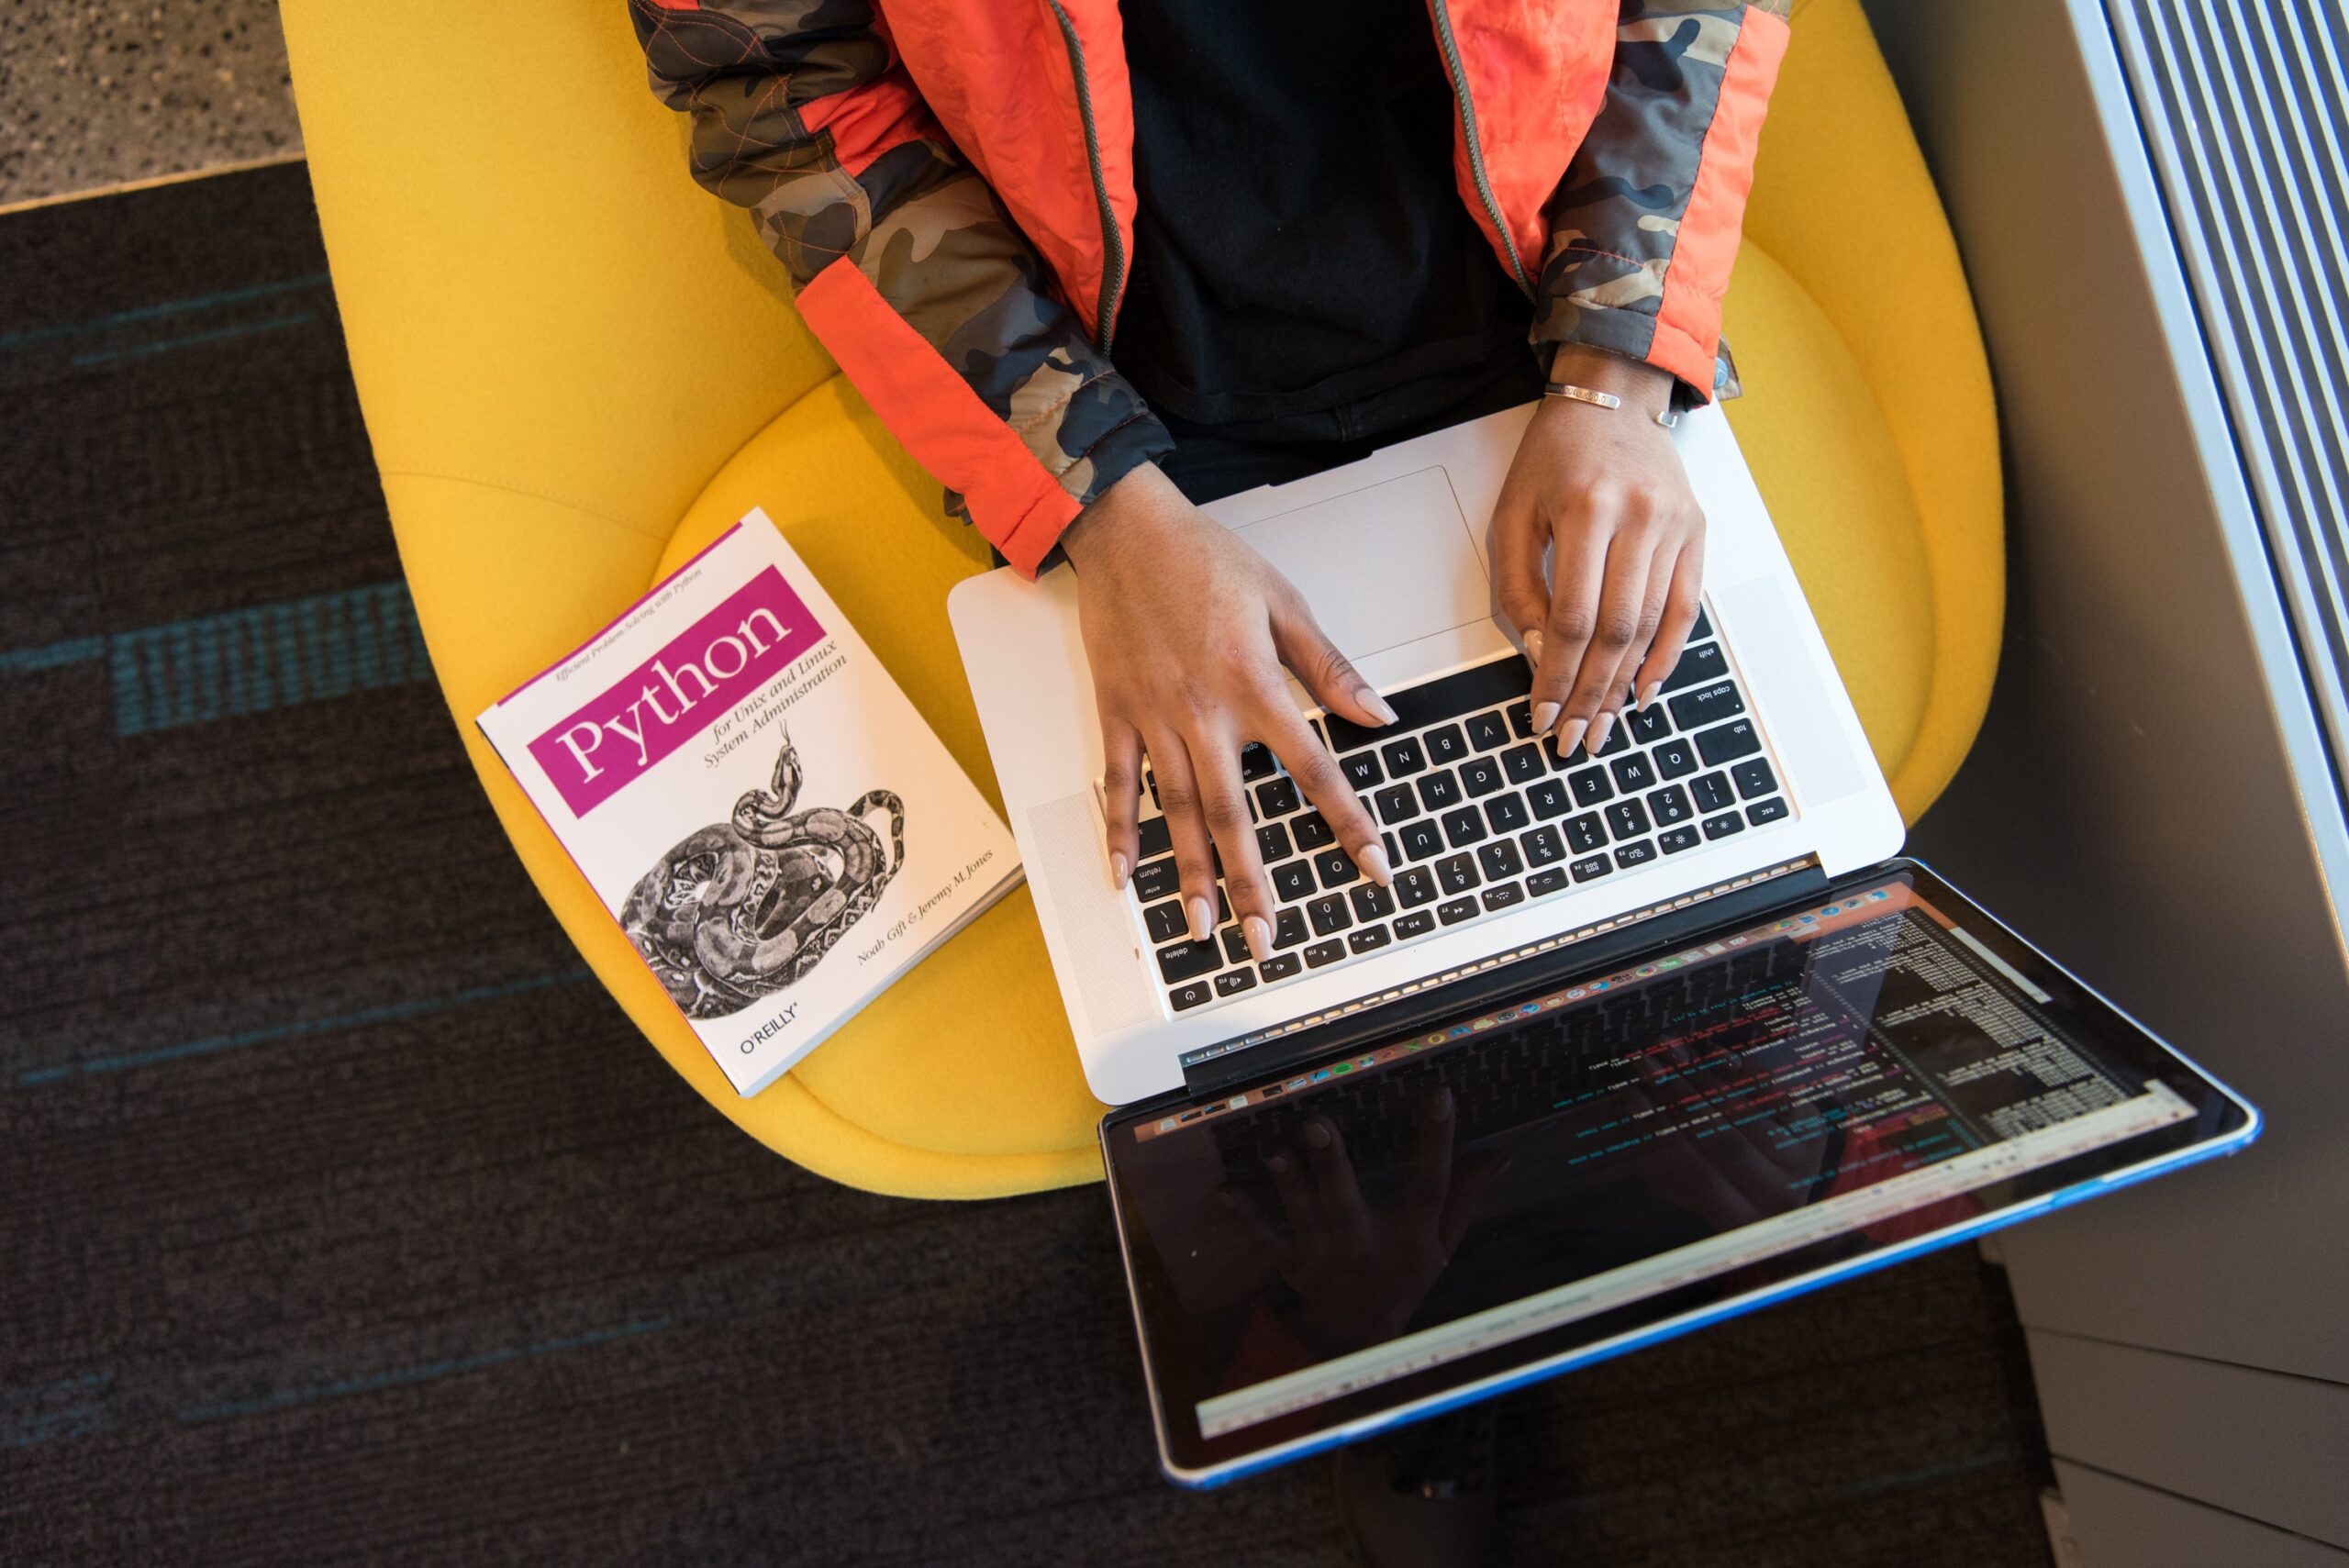 Mulher de pele negra escrevendo código em um MacBook. Ela está sentada em uma poltrona de cor amarela, veste uma jaqueta de cor laranja e tem um livro de Python ao seu lado.